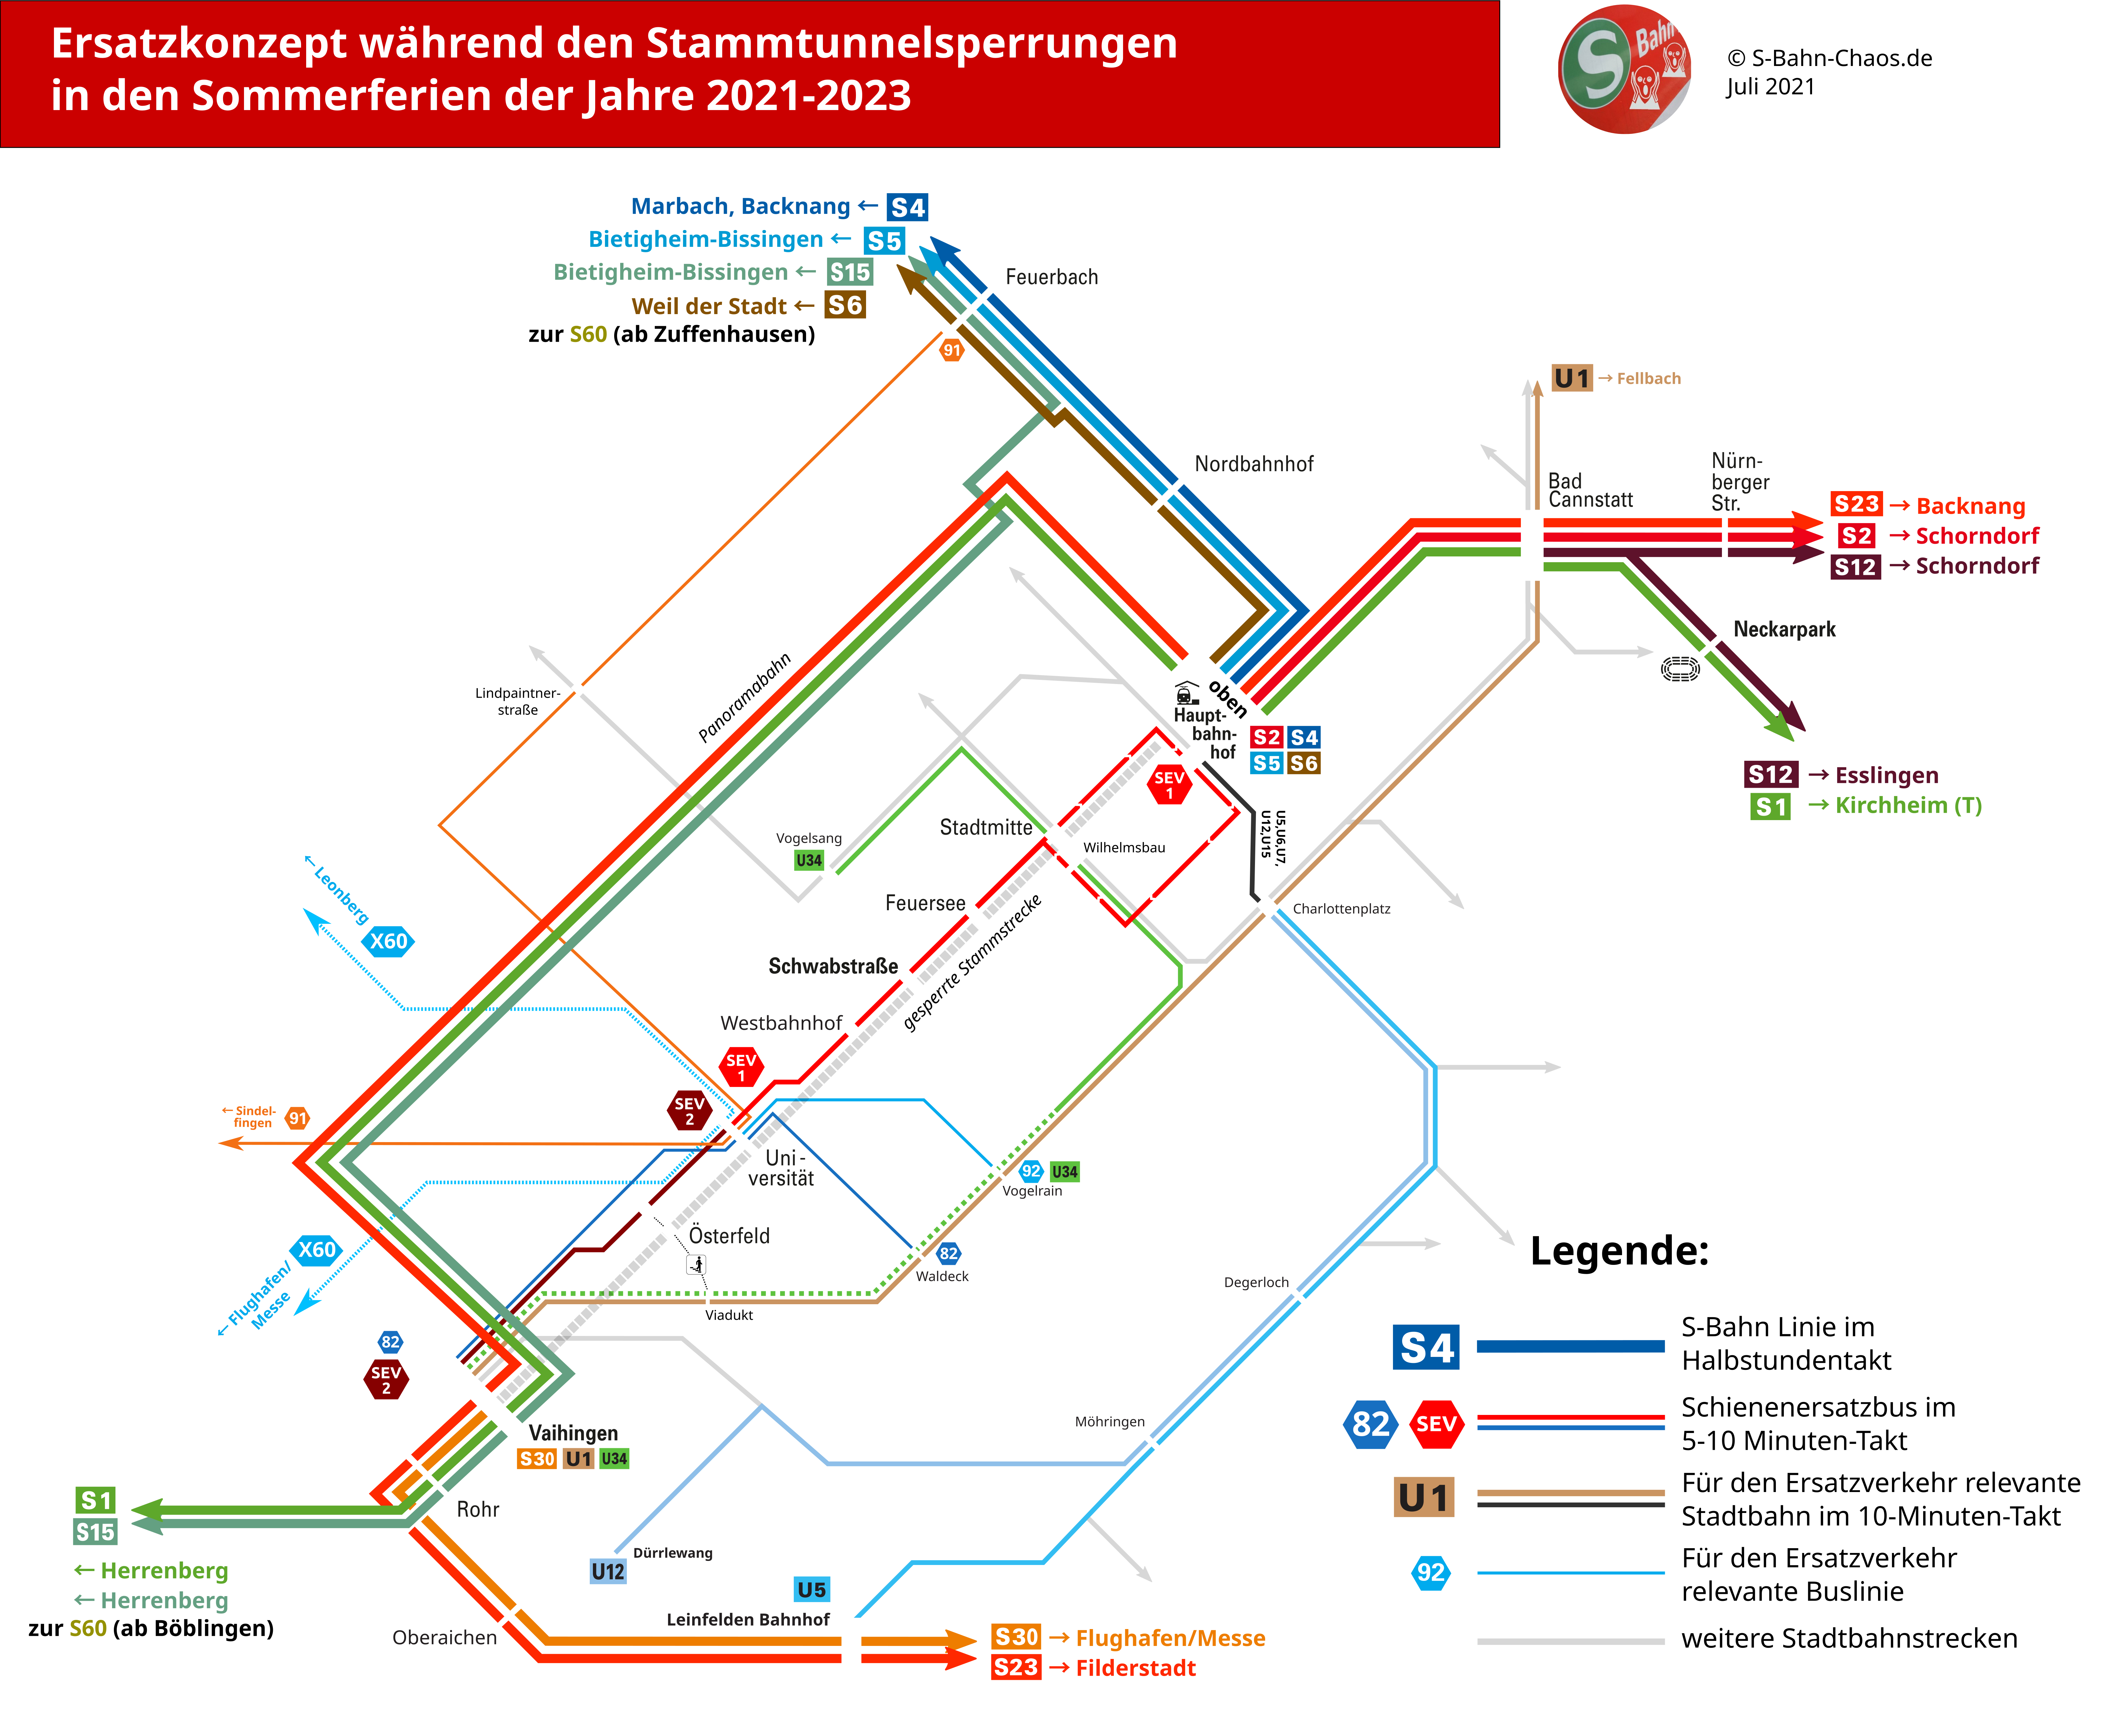 Voraussichtliches Ersatzkonzept während der Stammtunnelsperrungen in den Sommerferien 2021-2023.